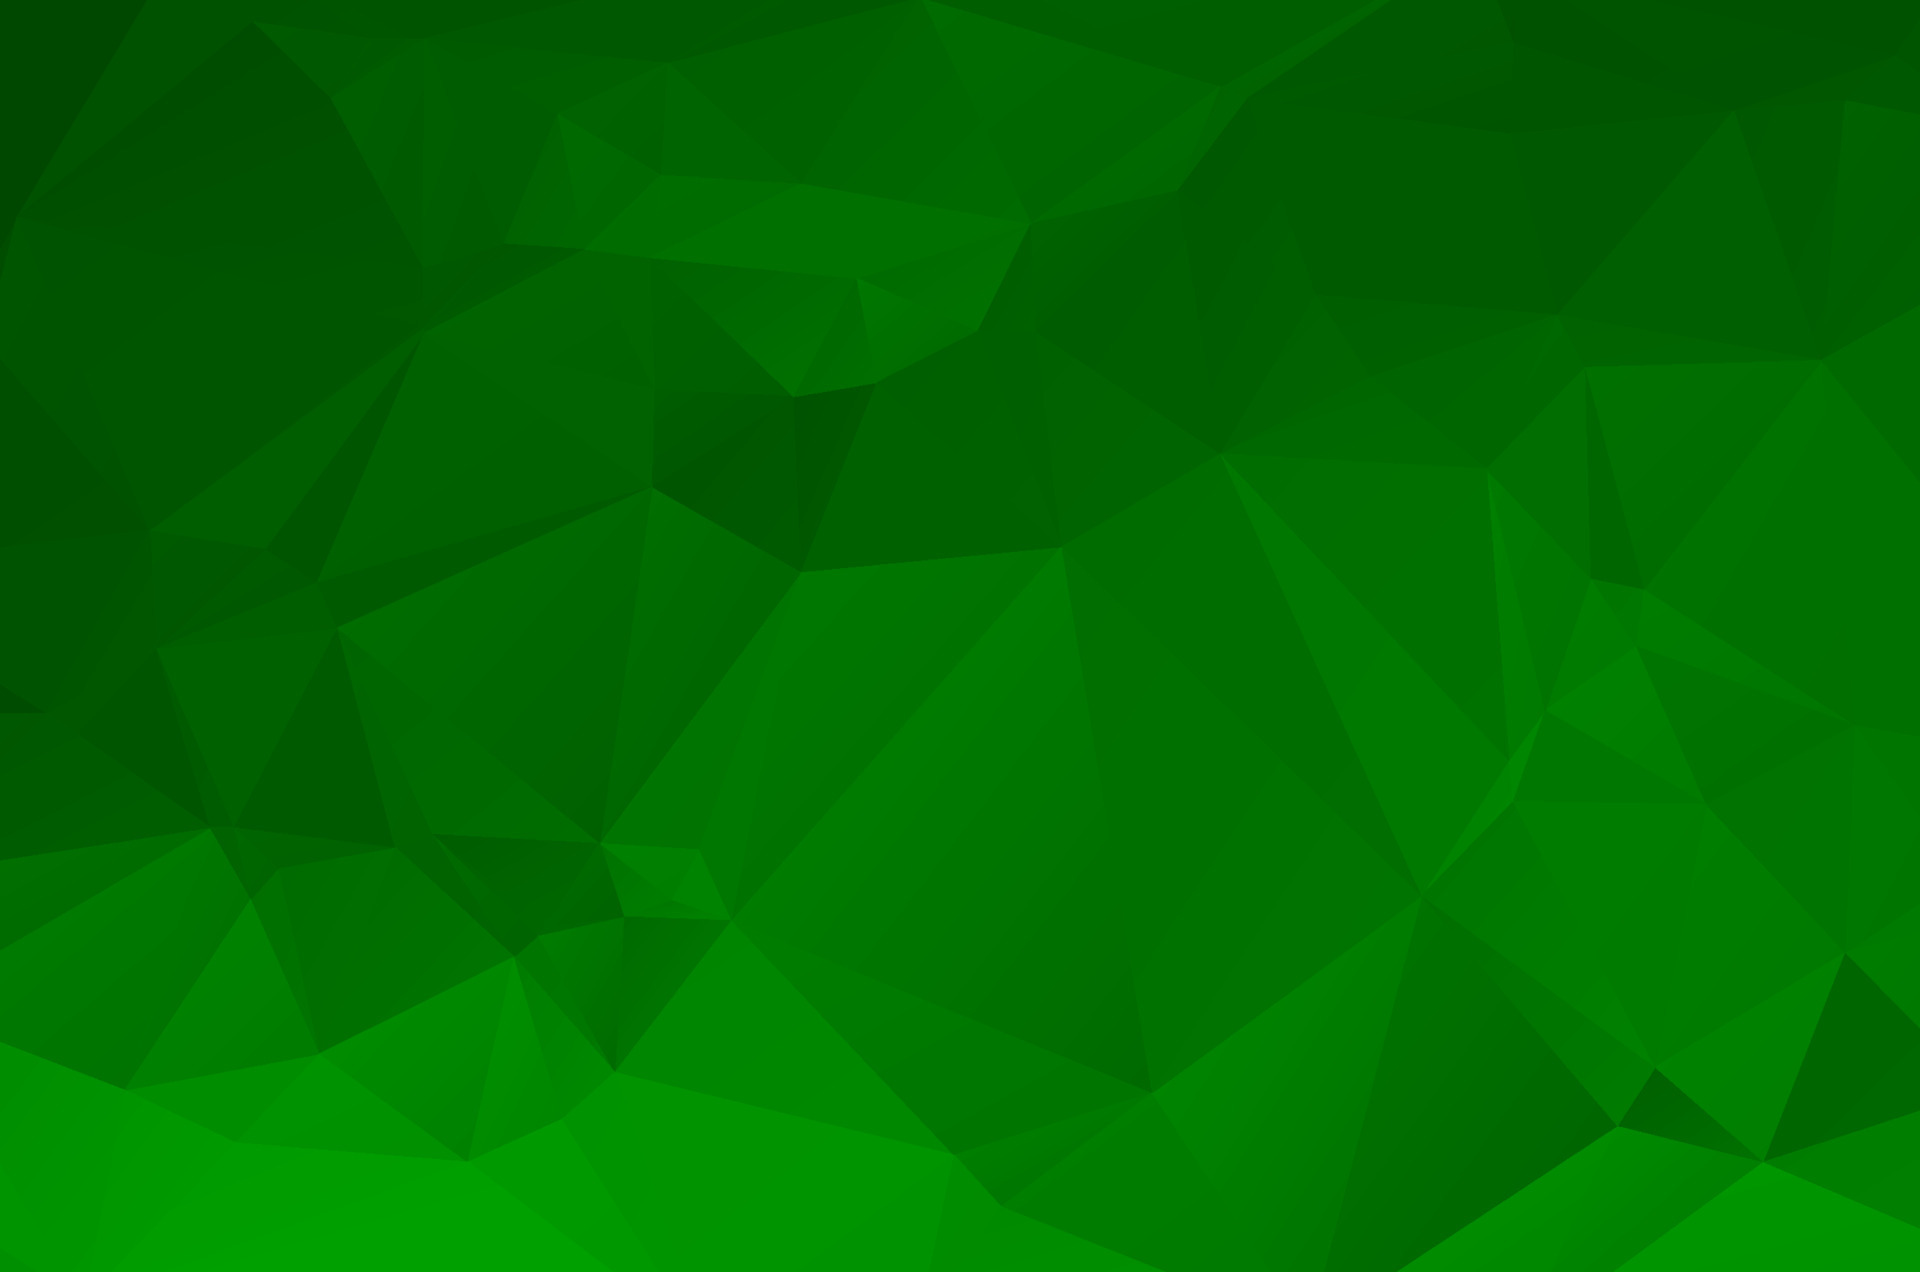 Bạn đang tìm kiếm một hình nền miễn phí để làm mới desktop hay trang web của mình? Vector hình nền mẫu xanh lá cây chắc chắn sẽ giúp bạn đó. Với nhiều mẫu mã đa dạng và chất lượng cao, bạn sẽ tìm thấy lựa chọn ưng ý cho mình. Hãy cải thiện không gian làm việc của mình với bộ sưu tập hình nền xanh lá cây này ngay nào!